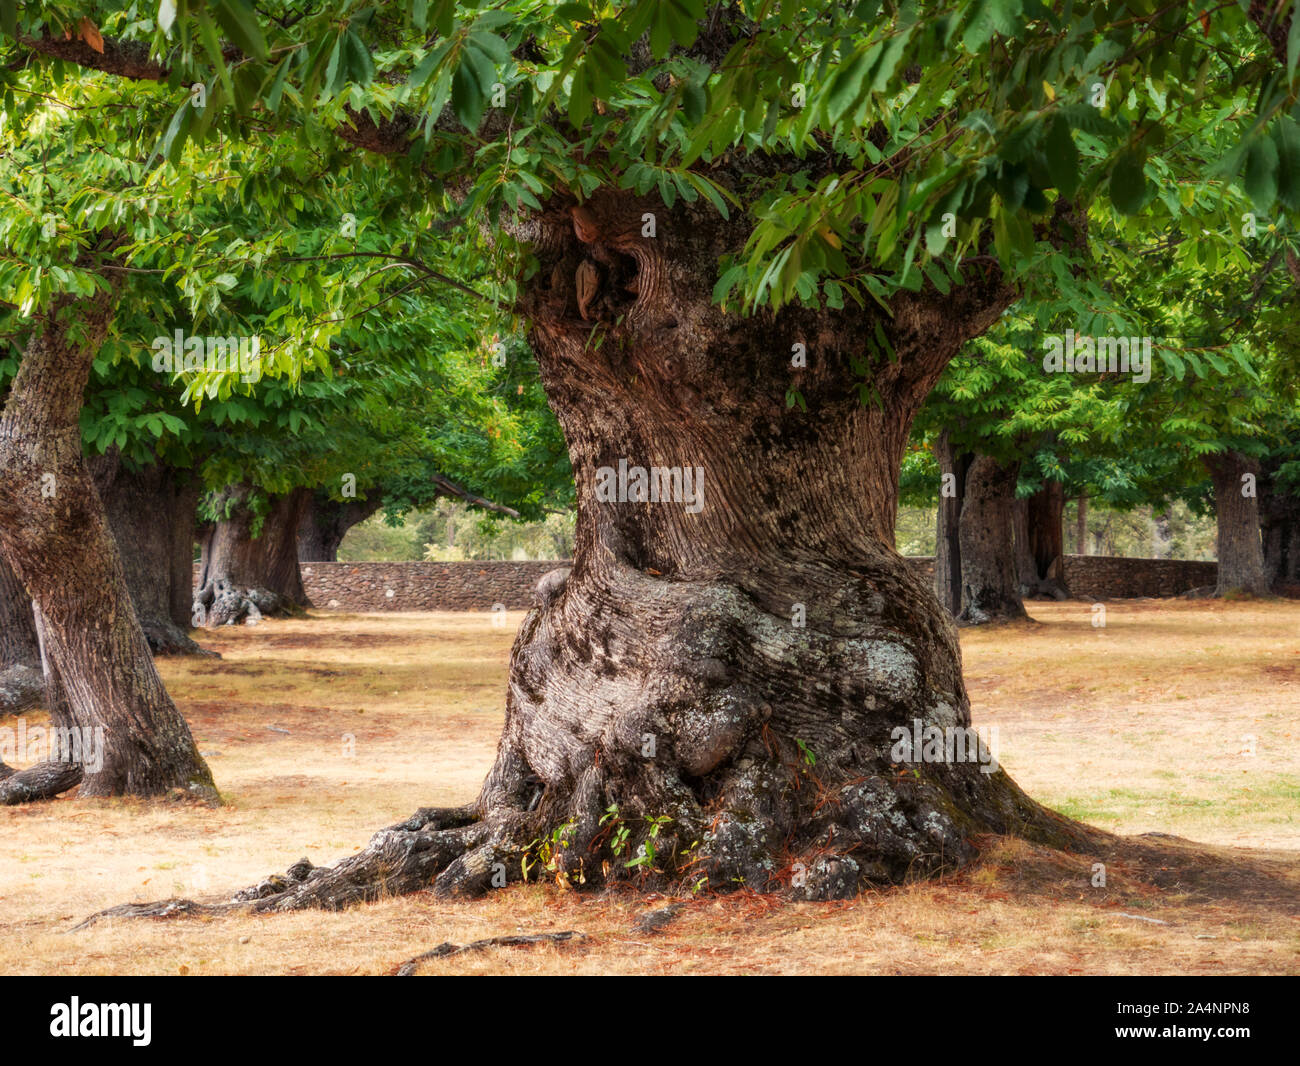 Mille anni di grande castagno con un molto grosso tronco. Immagine morbida (Orton effetto). Sanabria, Zamora, Spagna Foto Stock